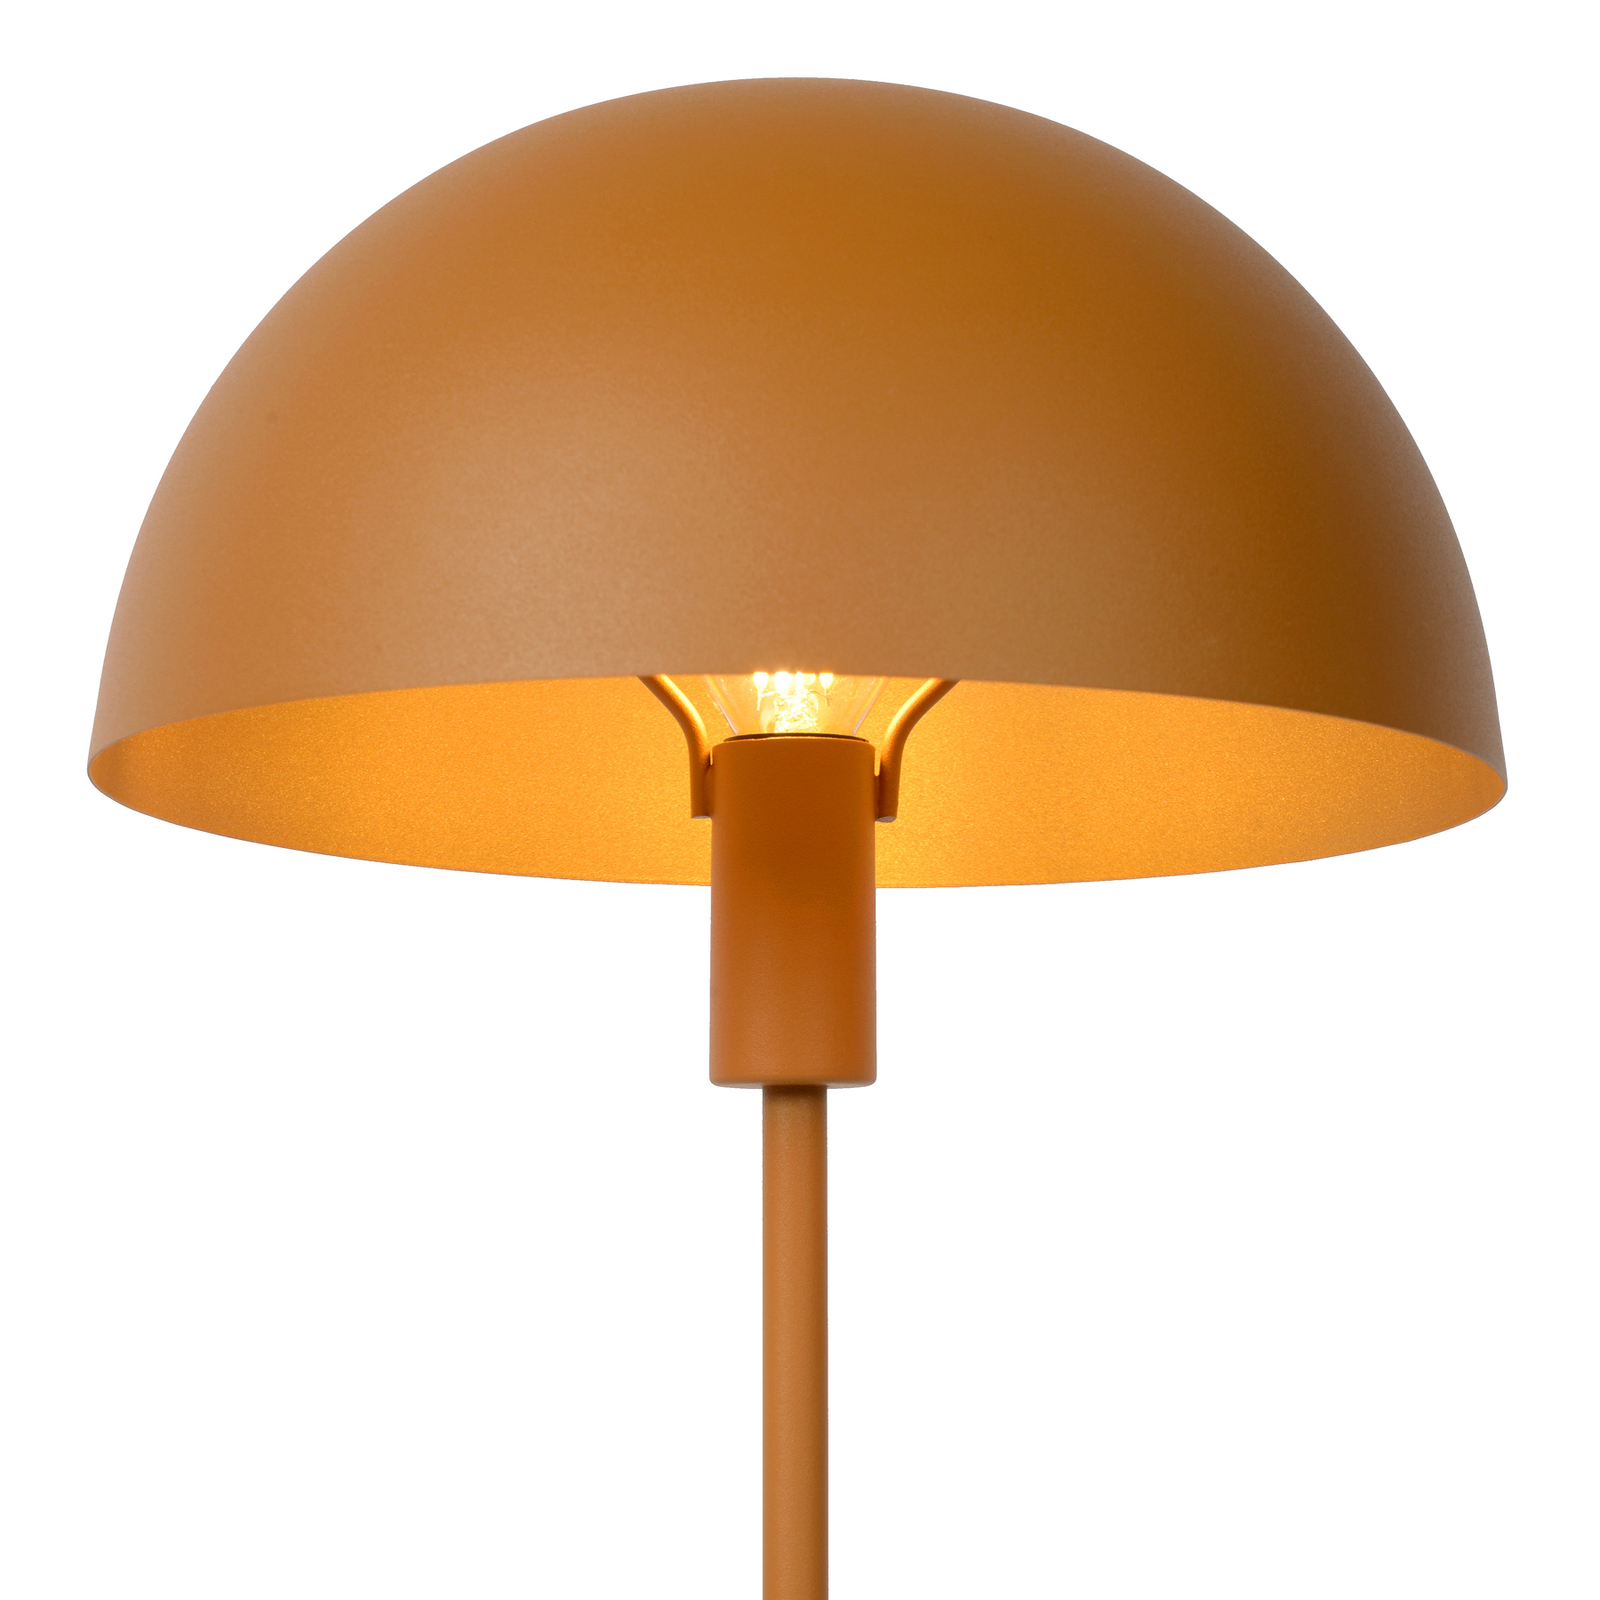 Lampada da tavolo Siemon in acciaio, Ø 25 cm, giallo ocra